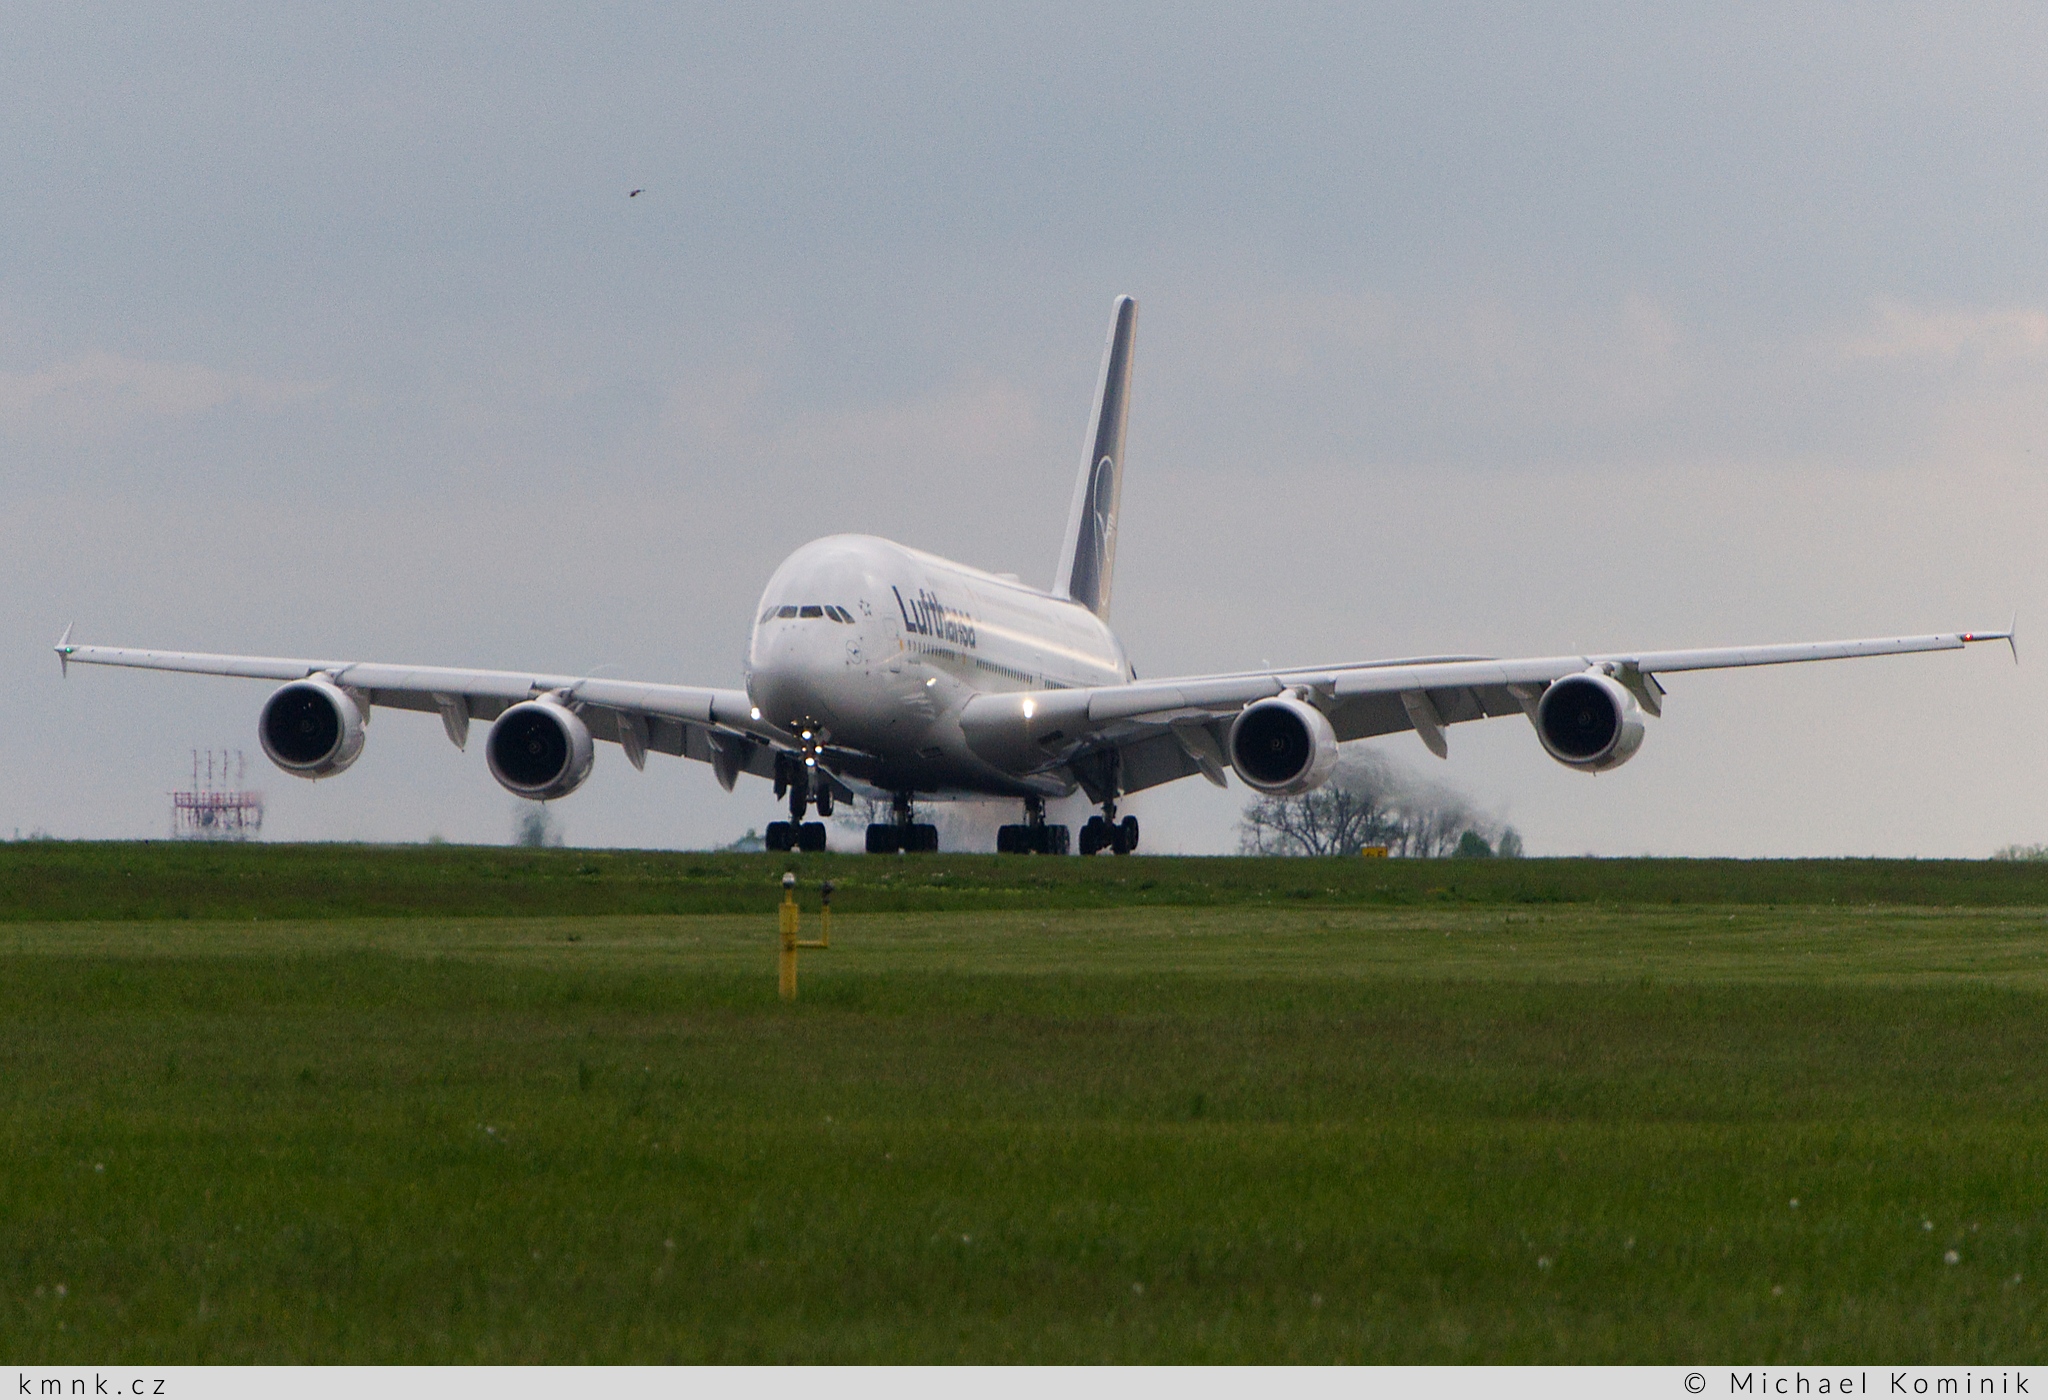 Lufthansa | Airbus A380-841 | D-AIMK